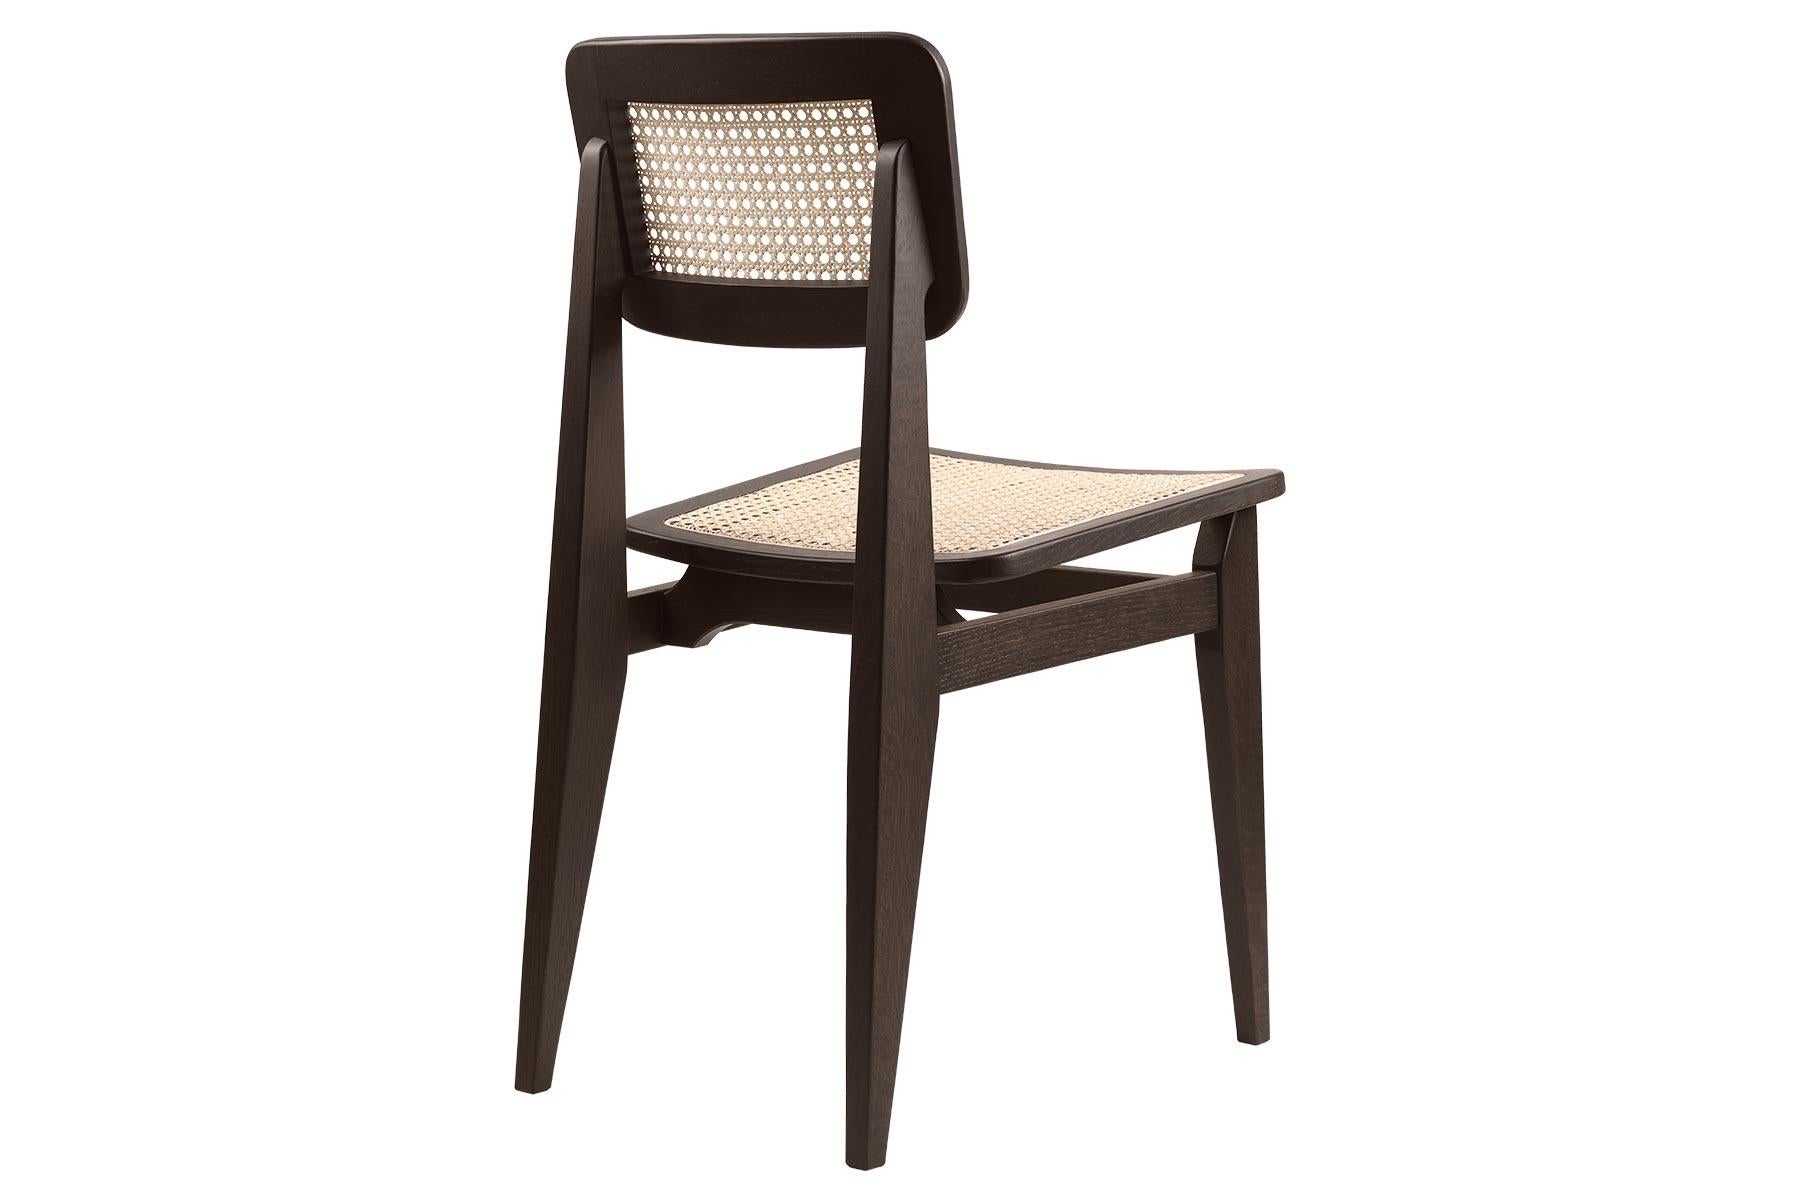 Eines der bekanntesten Stücke von Marcel Gascoin, der C-Chair Esszimmerstuhl, wurde 1947 entworfen. Der Stuhl repräsentiert nicht nur die ästhetische und praktische Kraft von Gascoins Entwürfen, sondern auch sein soziales Gewissen, das er in den